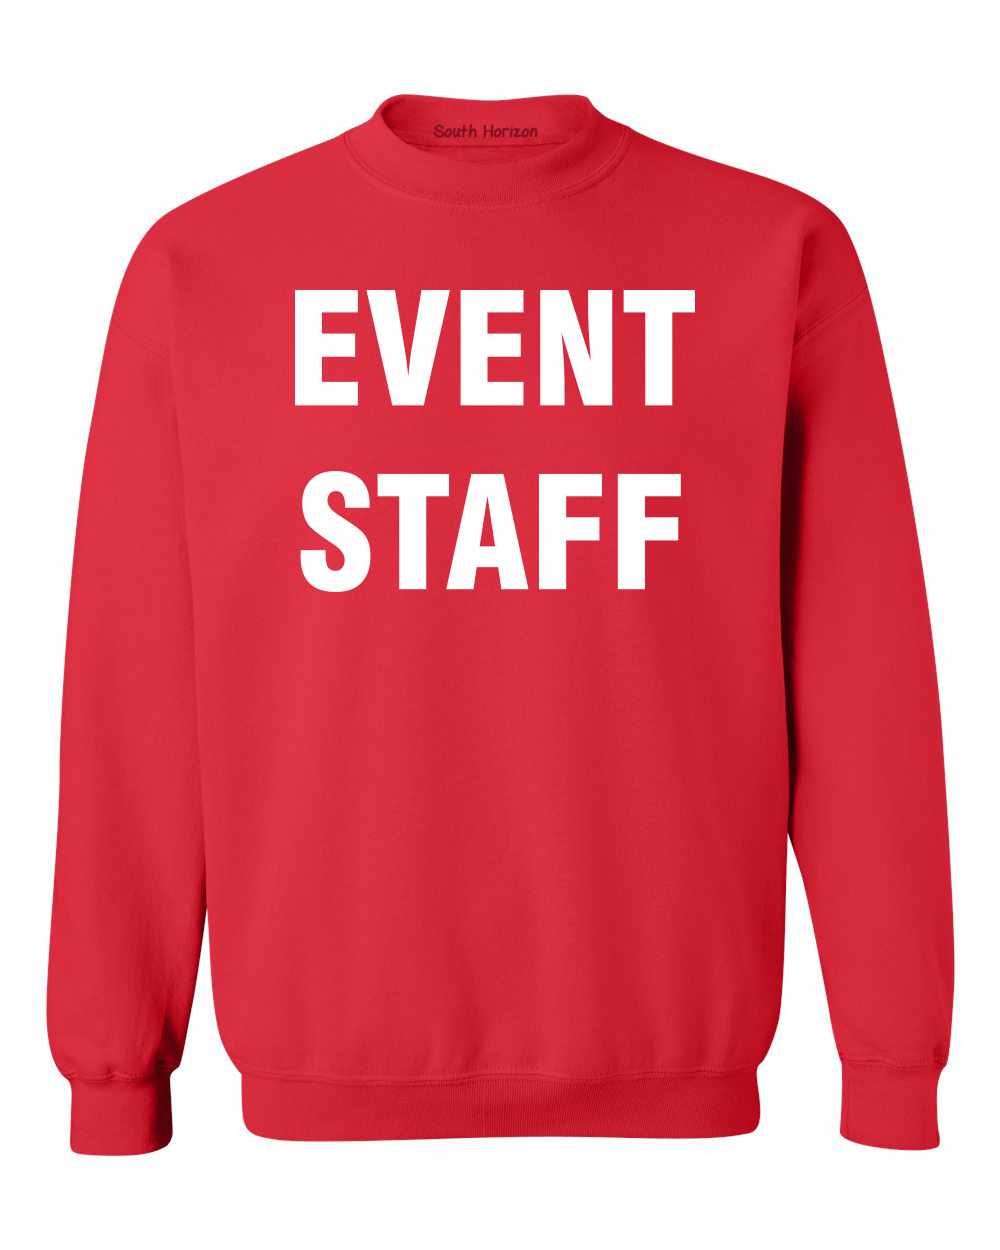 EVENT STAFF on SweatShirt (#399-11)